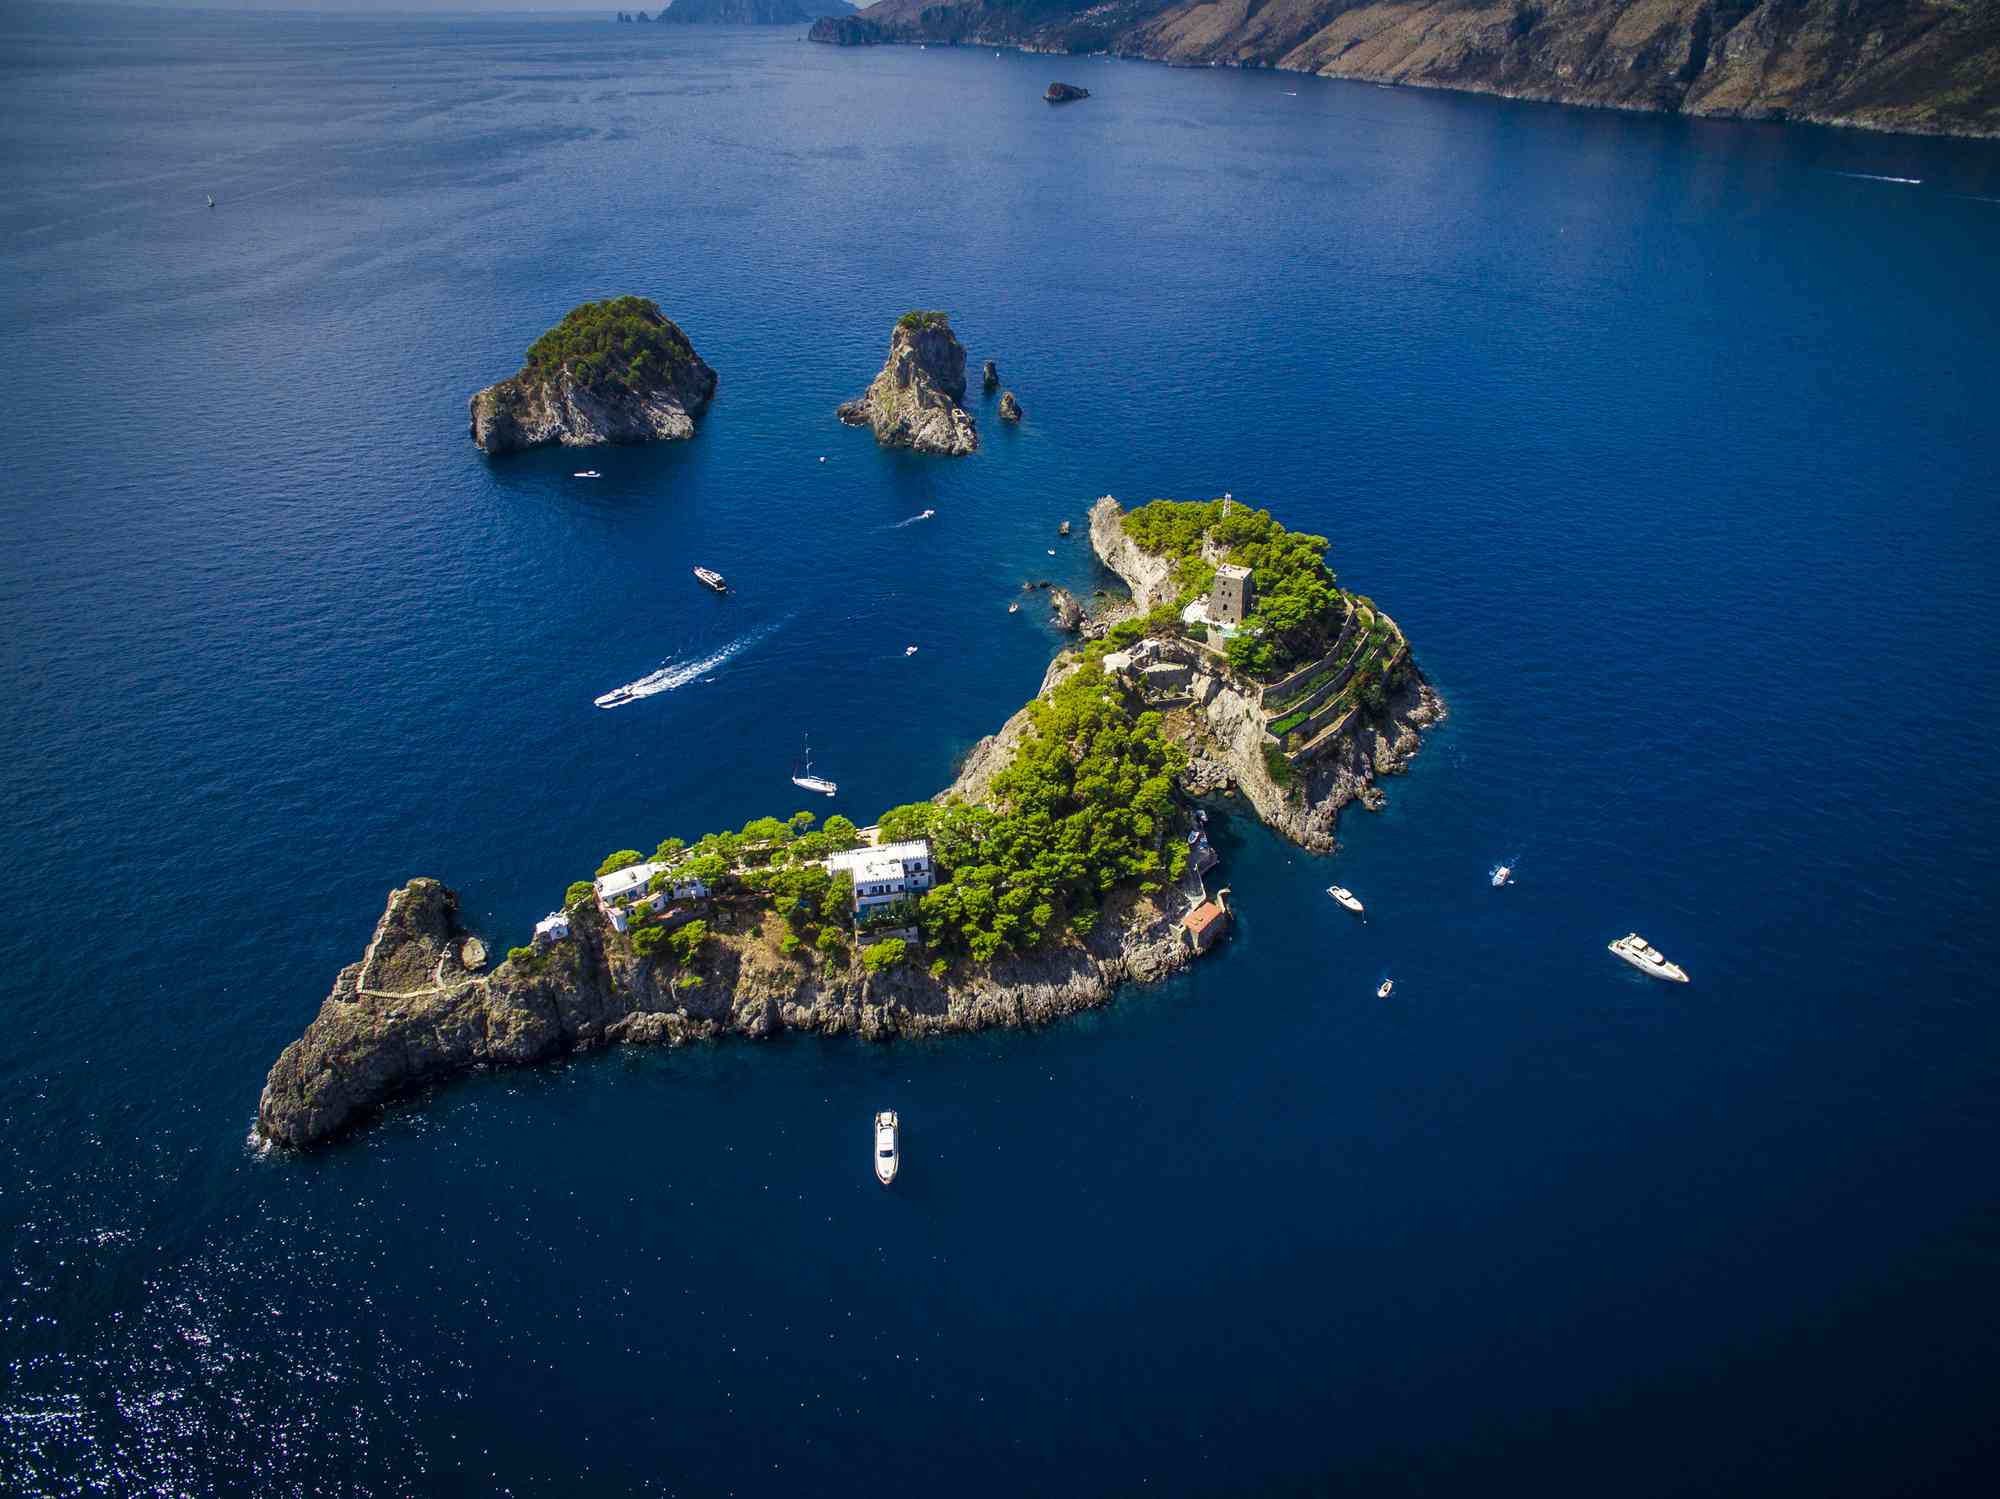 Vista aérea de las Islas Li Galli frente a Positano, una de ellas, Gallo Lungo, tiene forma de delfín